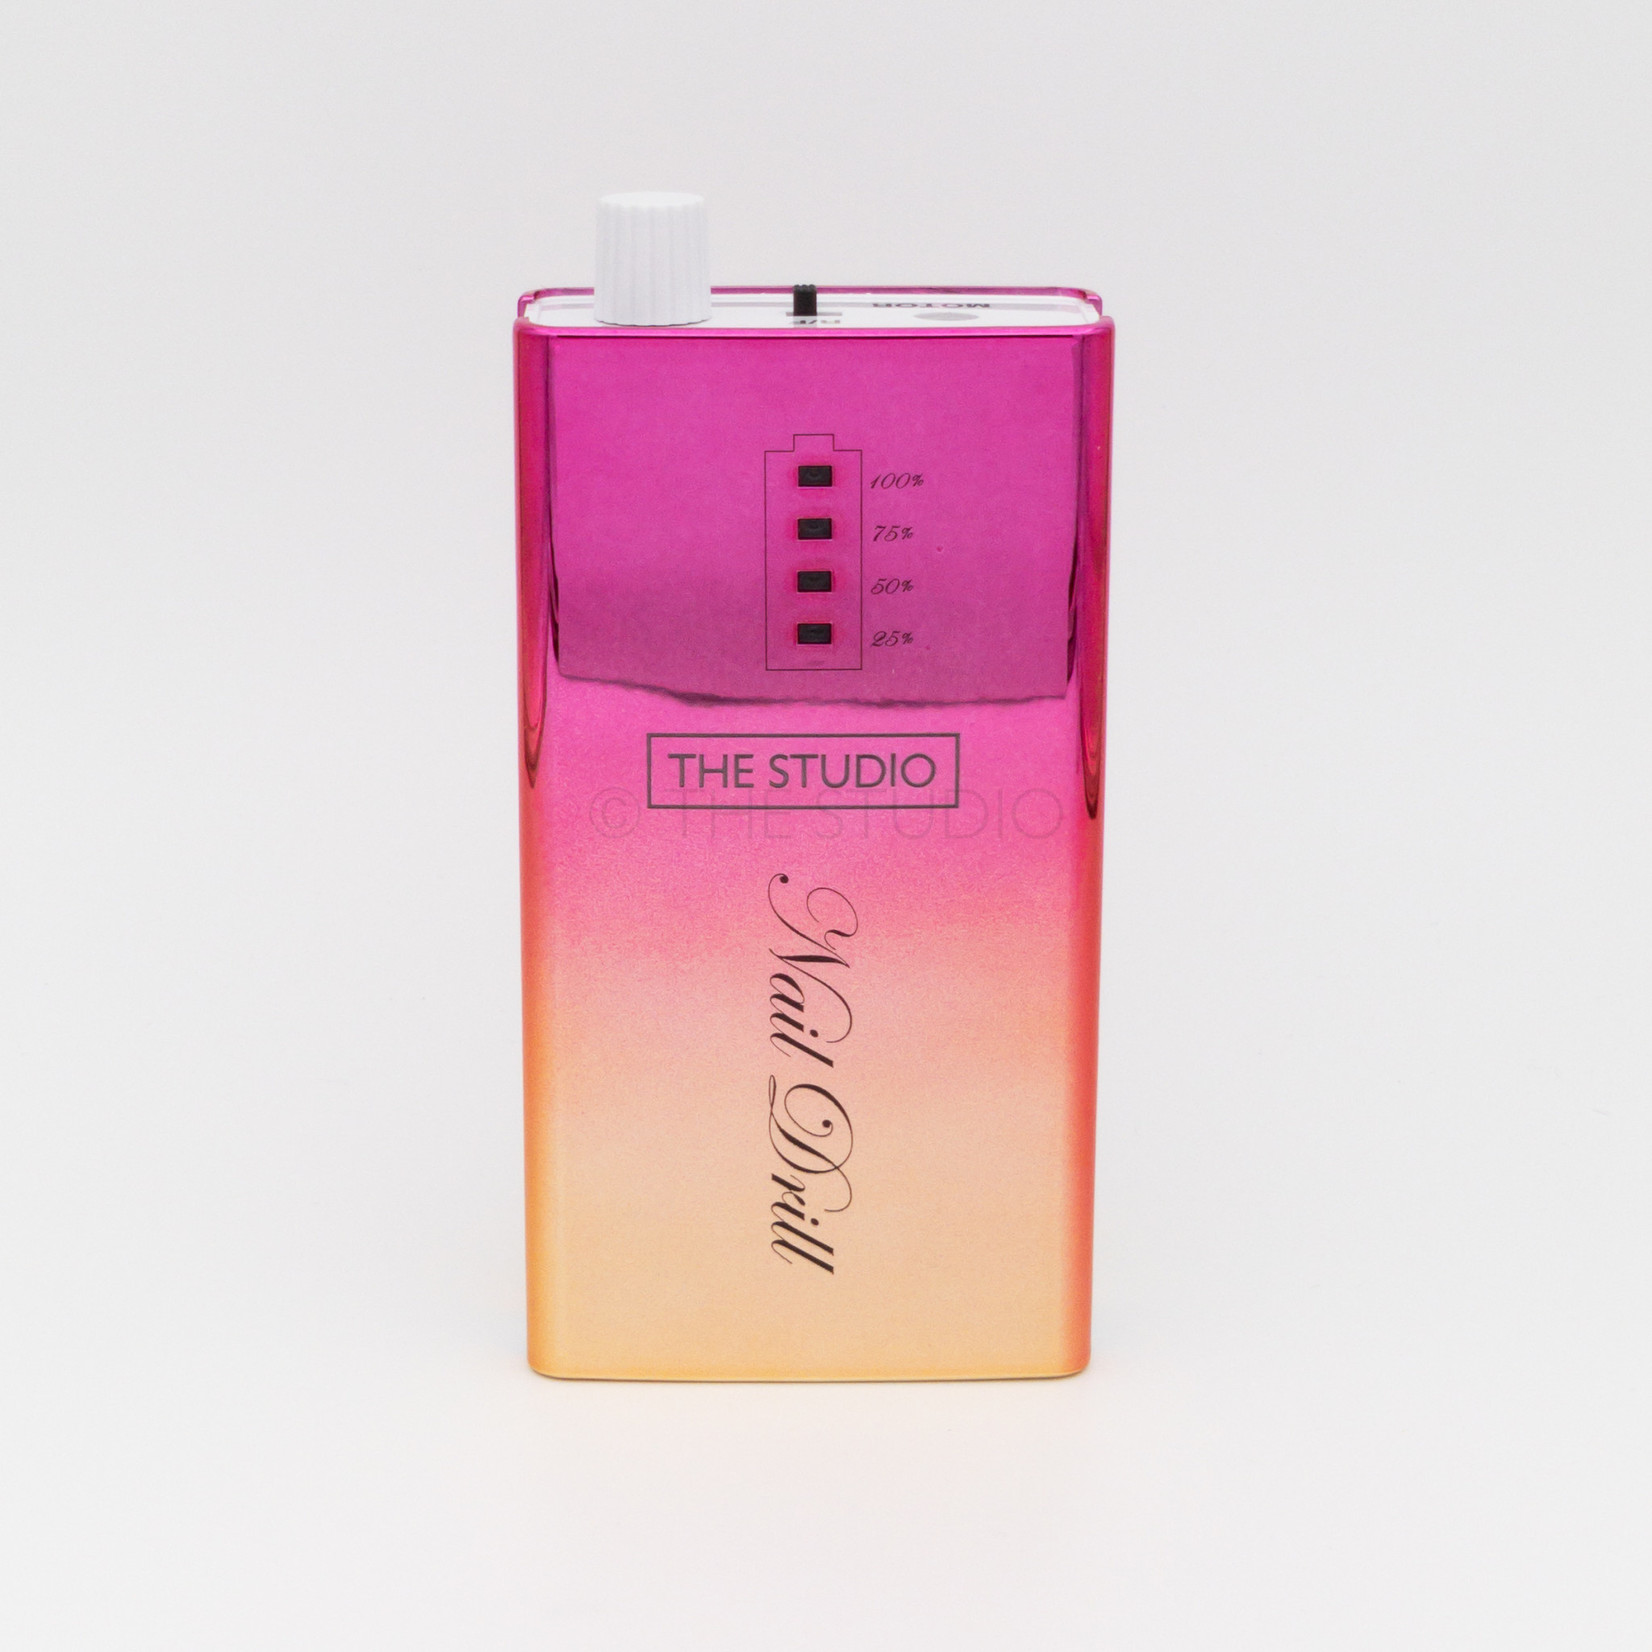 The Studio The Studio - e-File Drill Machine - Ombre Pink, Gold